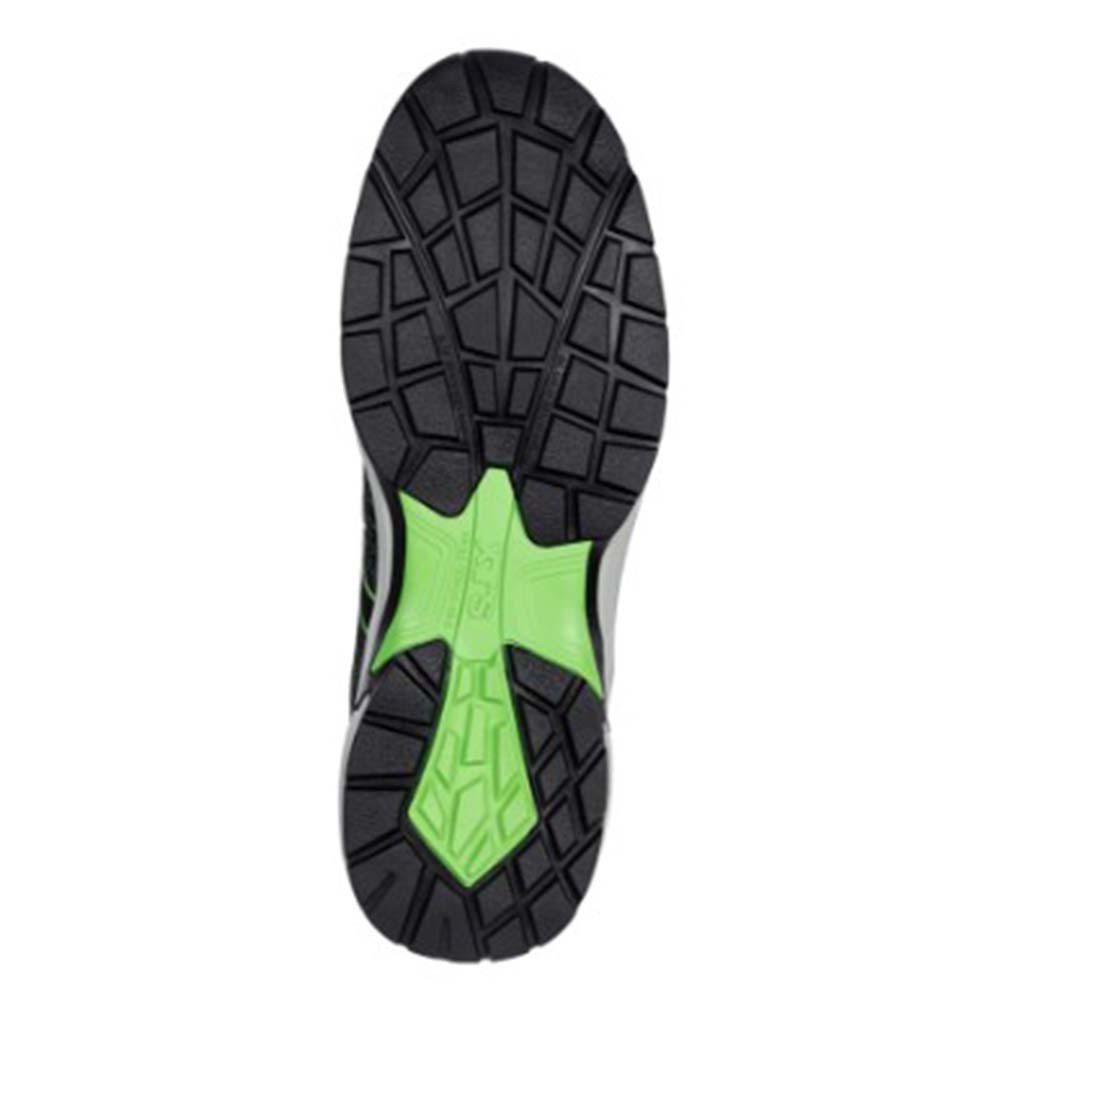 Zapatos de protección S1P SPLENDID GREEN GH - Calzado de protección